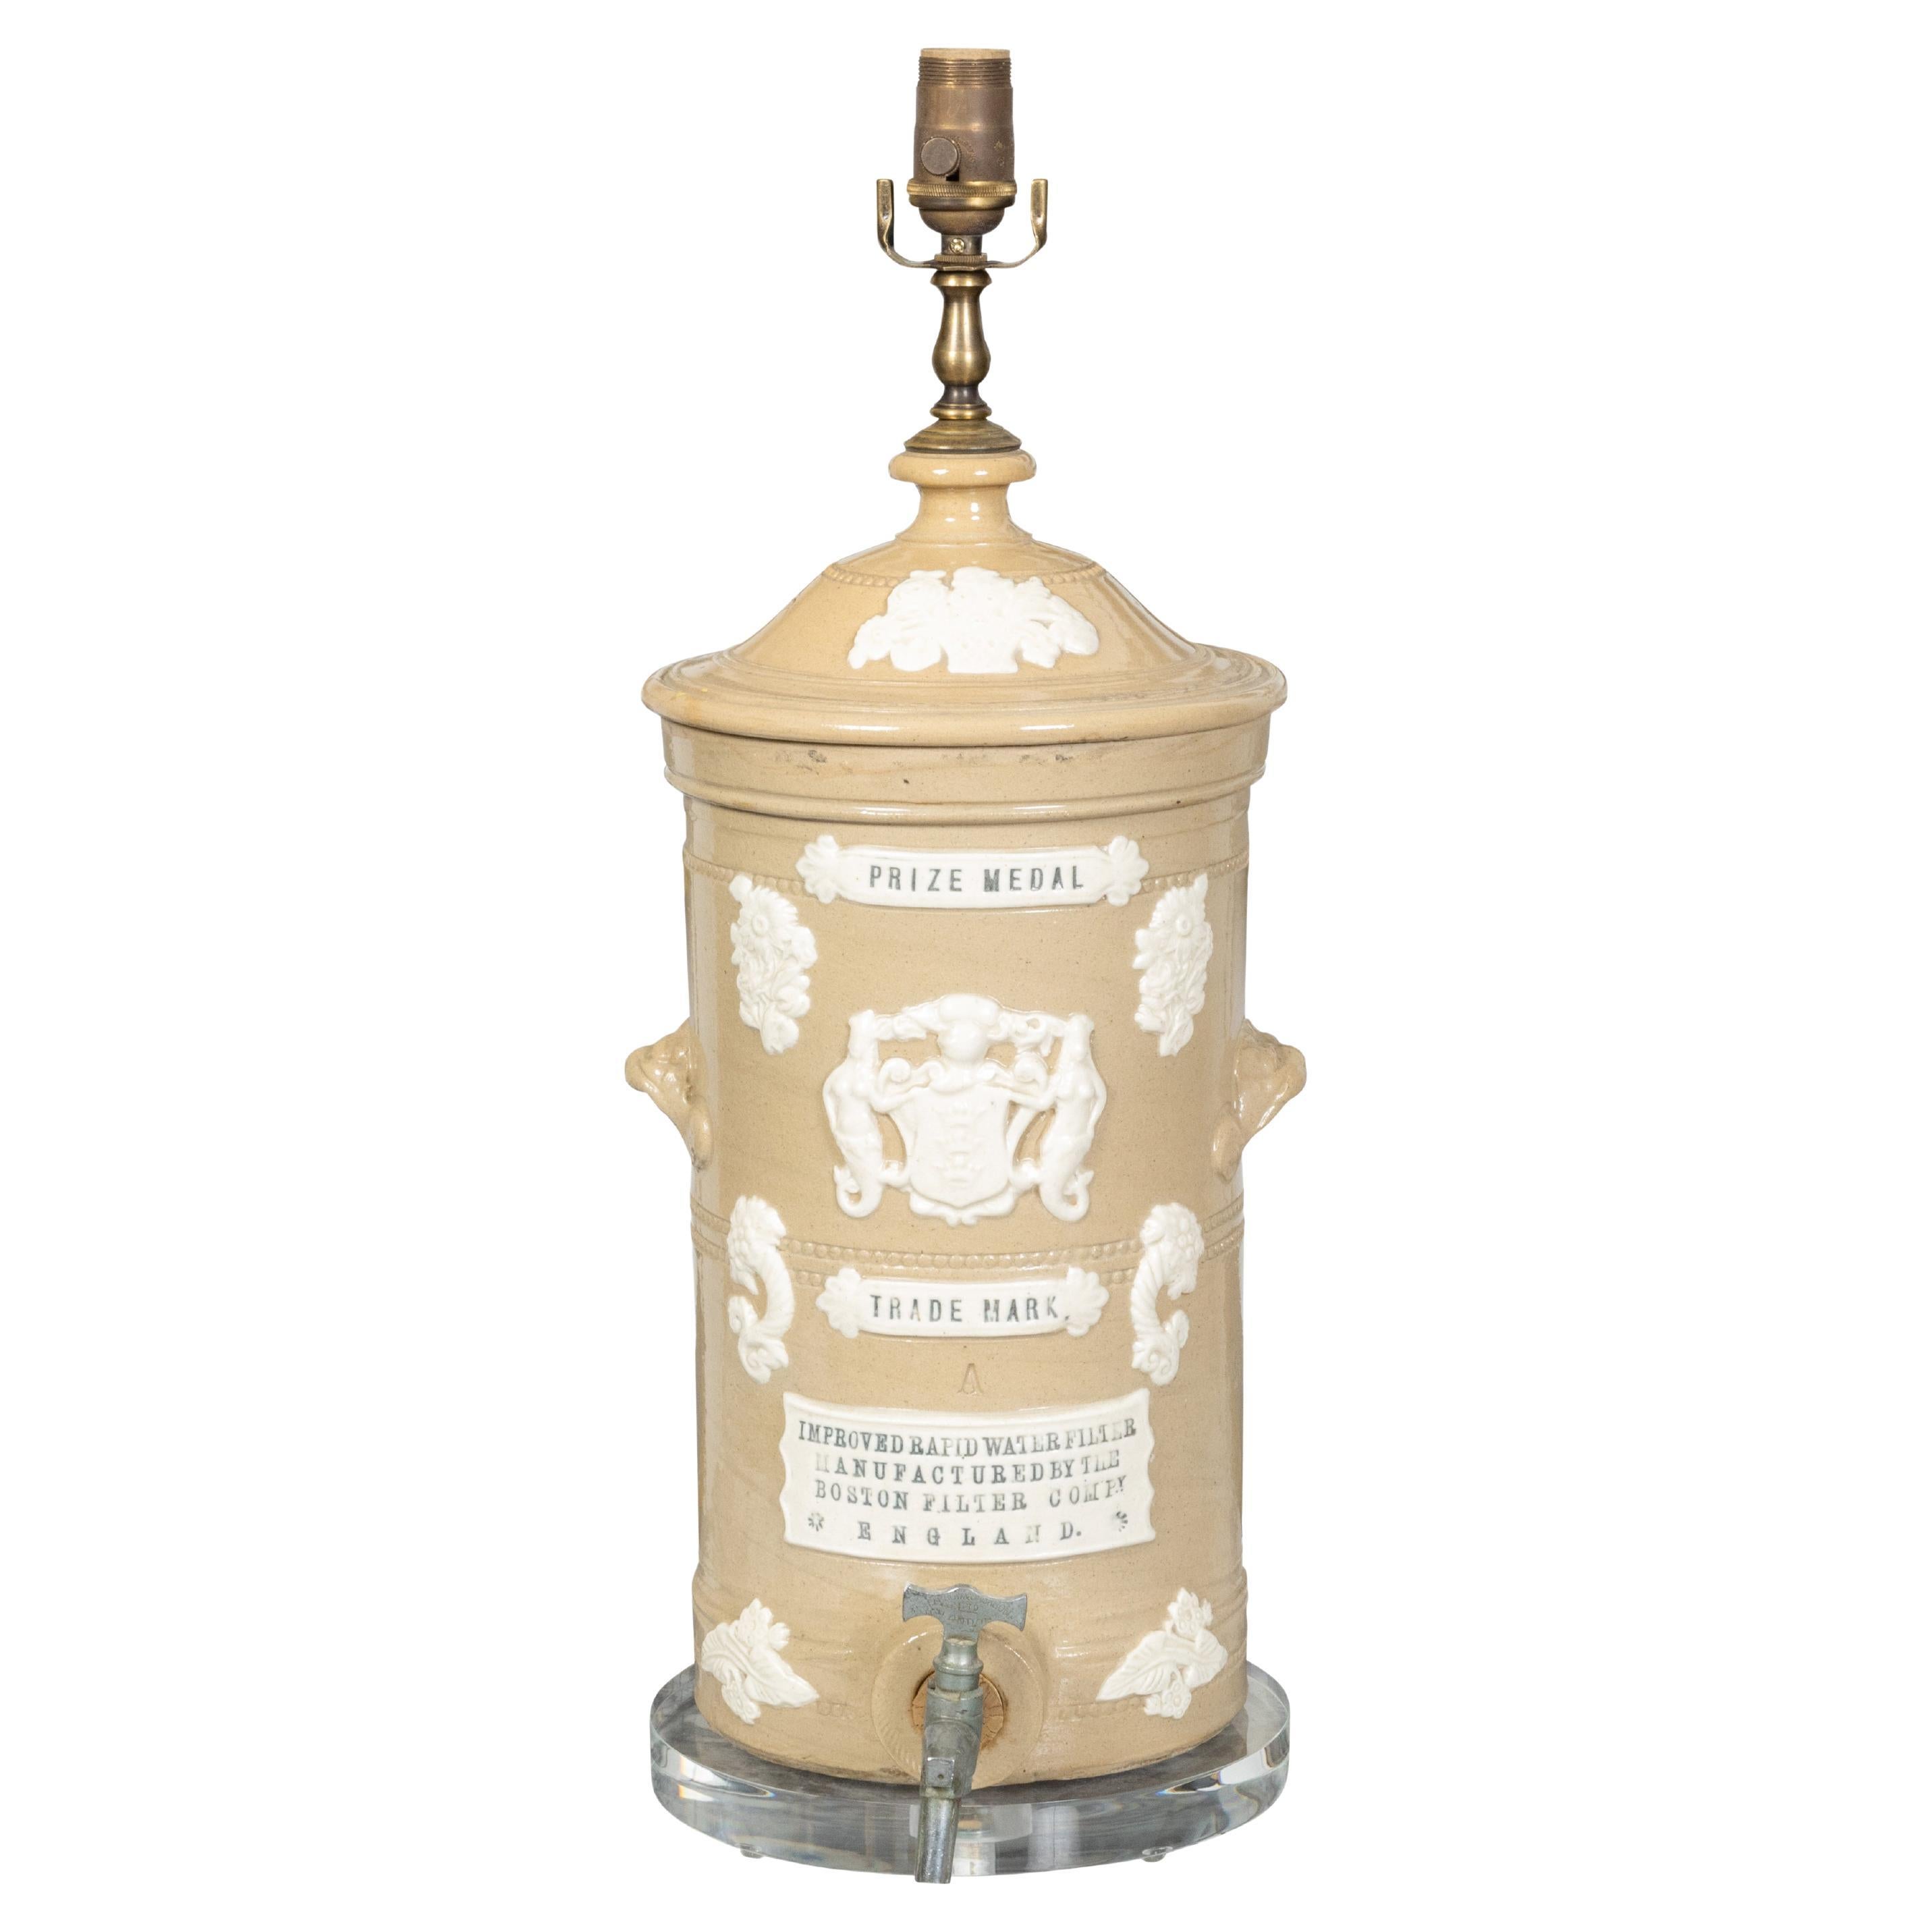 Englischer, creme glasierter Steingut-Wasserfilter aus dem 19. Jahrhundert, hergestellt in einer verdrahteten Lampe